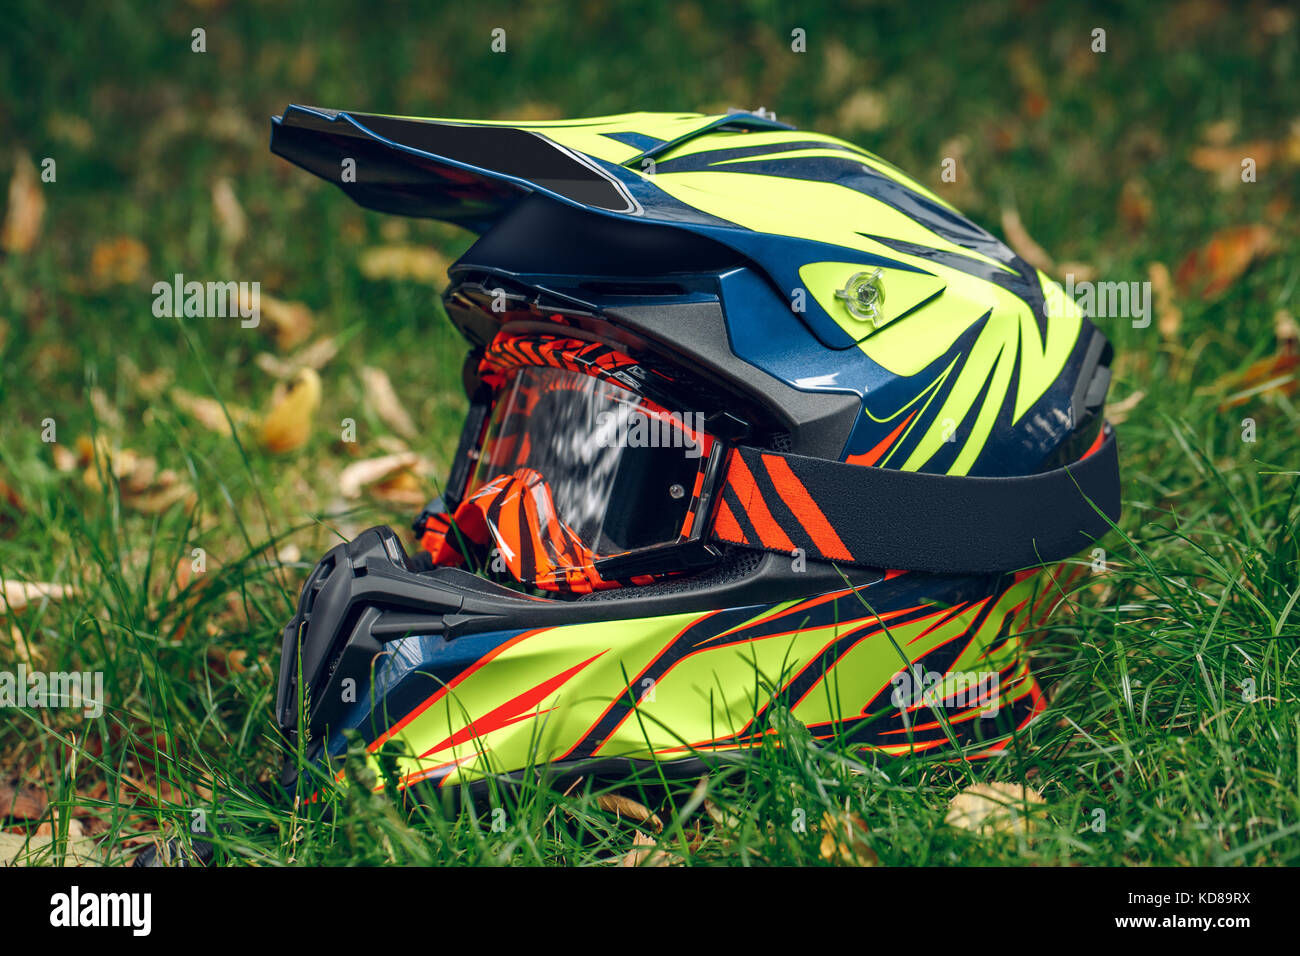 Motorrad Helm mit Brille zum Schutz trocken gefallenen Blätter über greem Gras. Automne Stockfoto